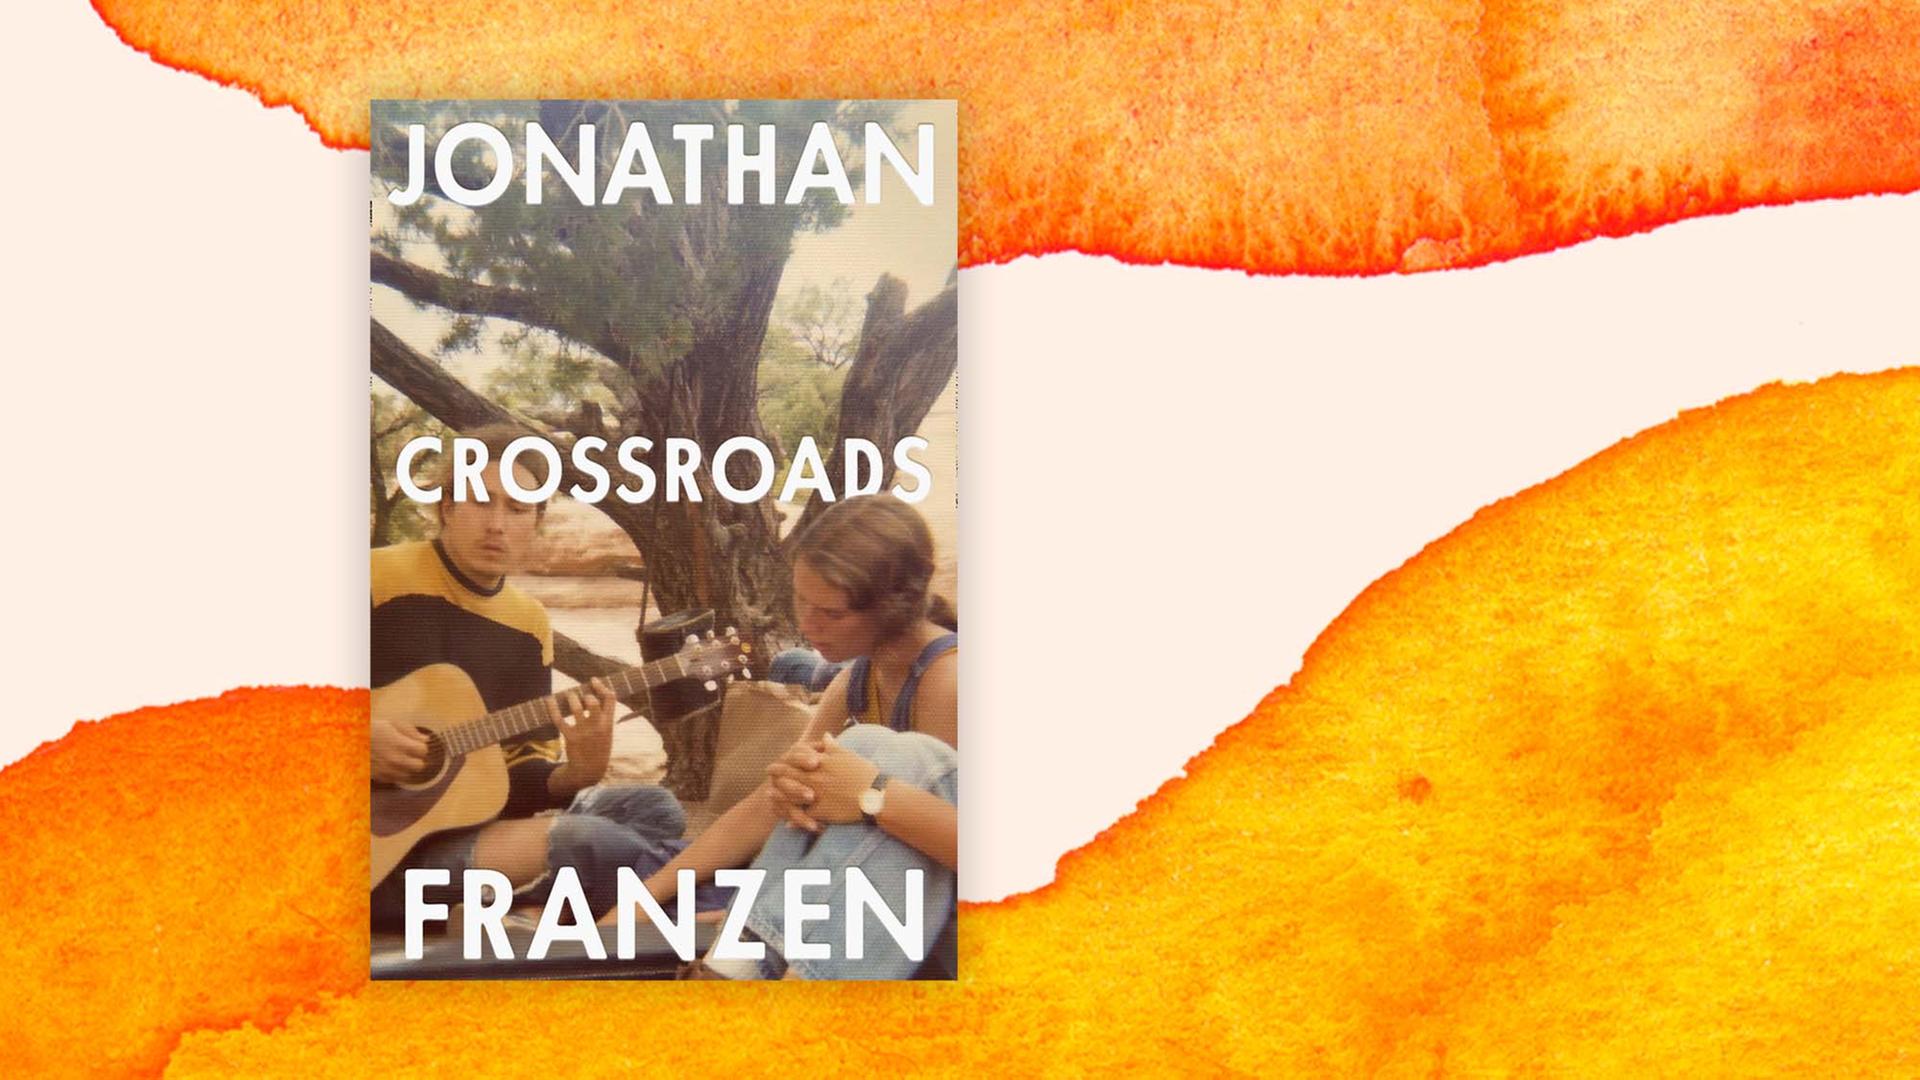 Buchcover: "Crossroads" von Jonathan Franzen